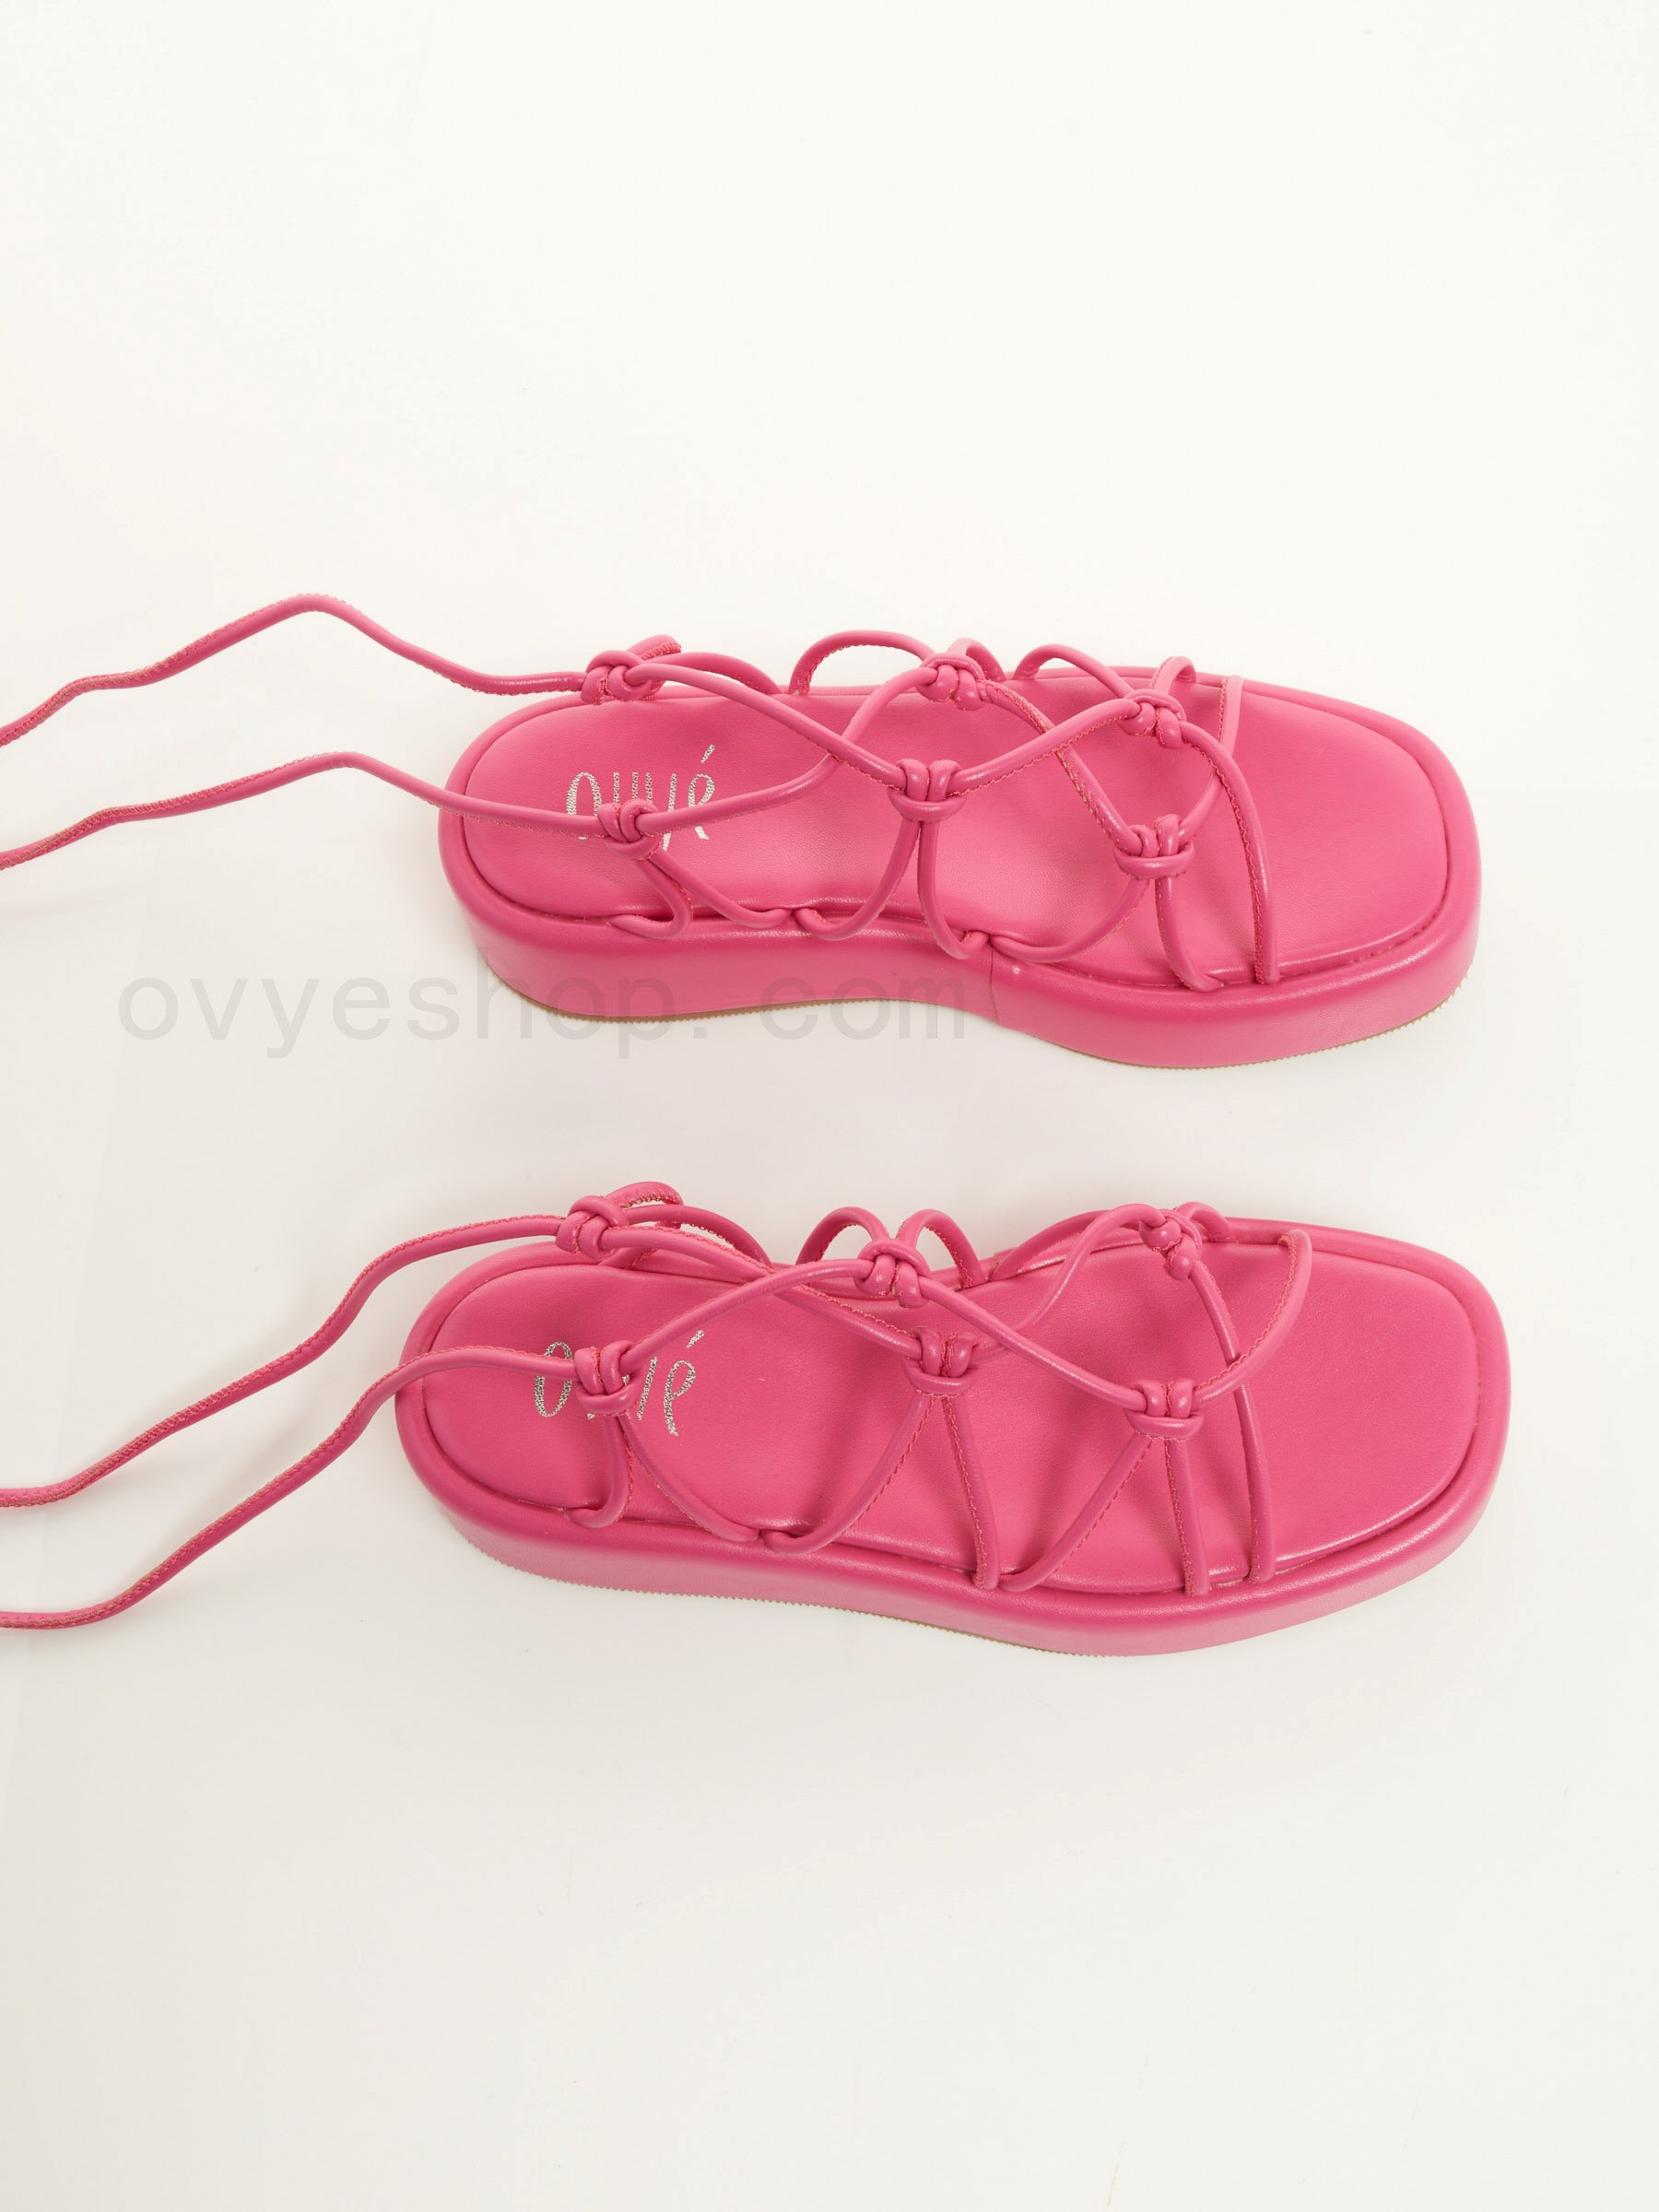 Greek Flat Sandals F0817885-0452 Outlet En Ligne